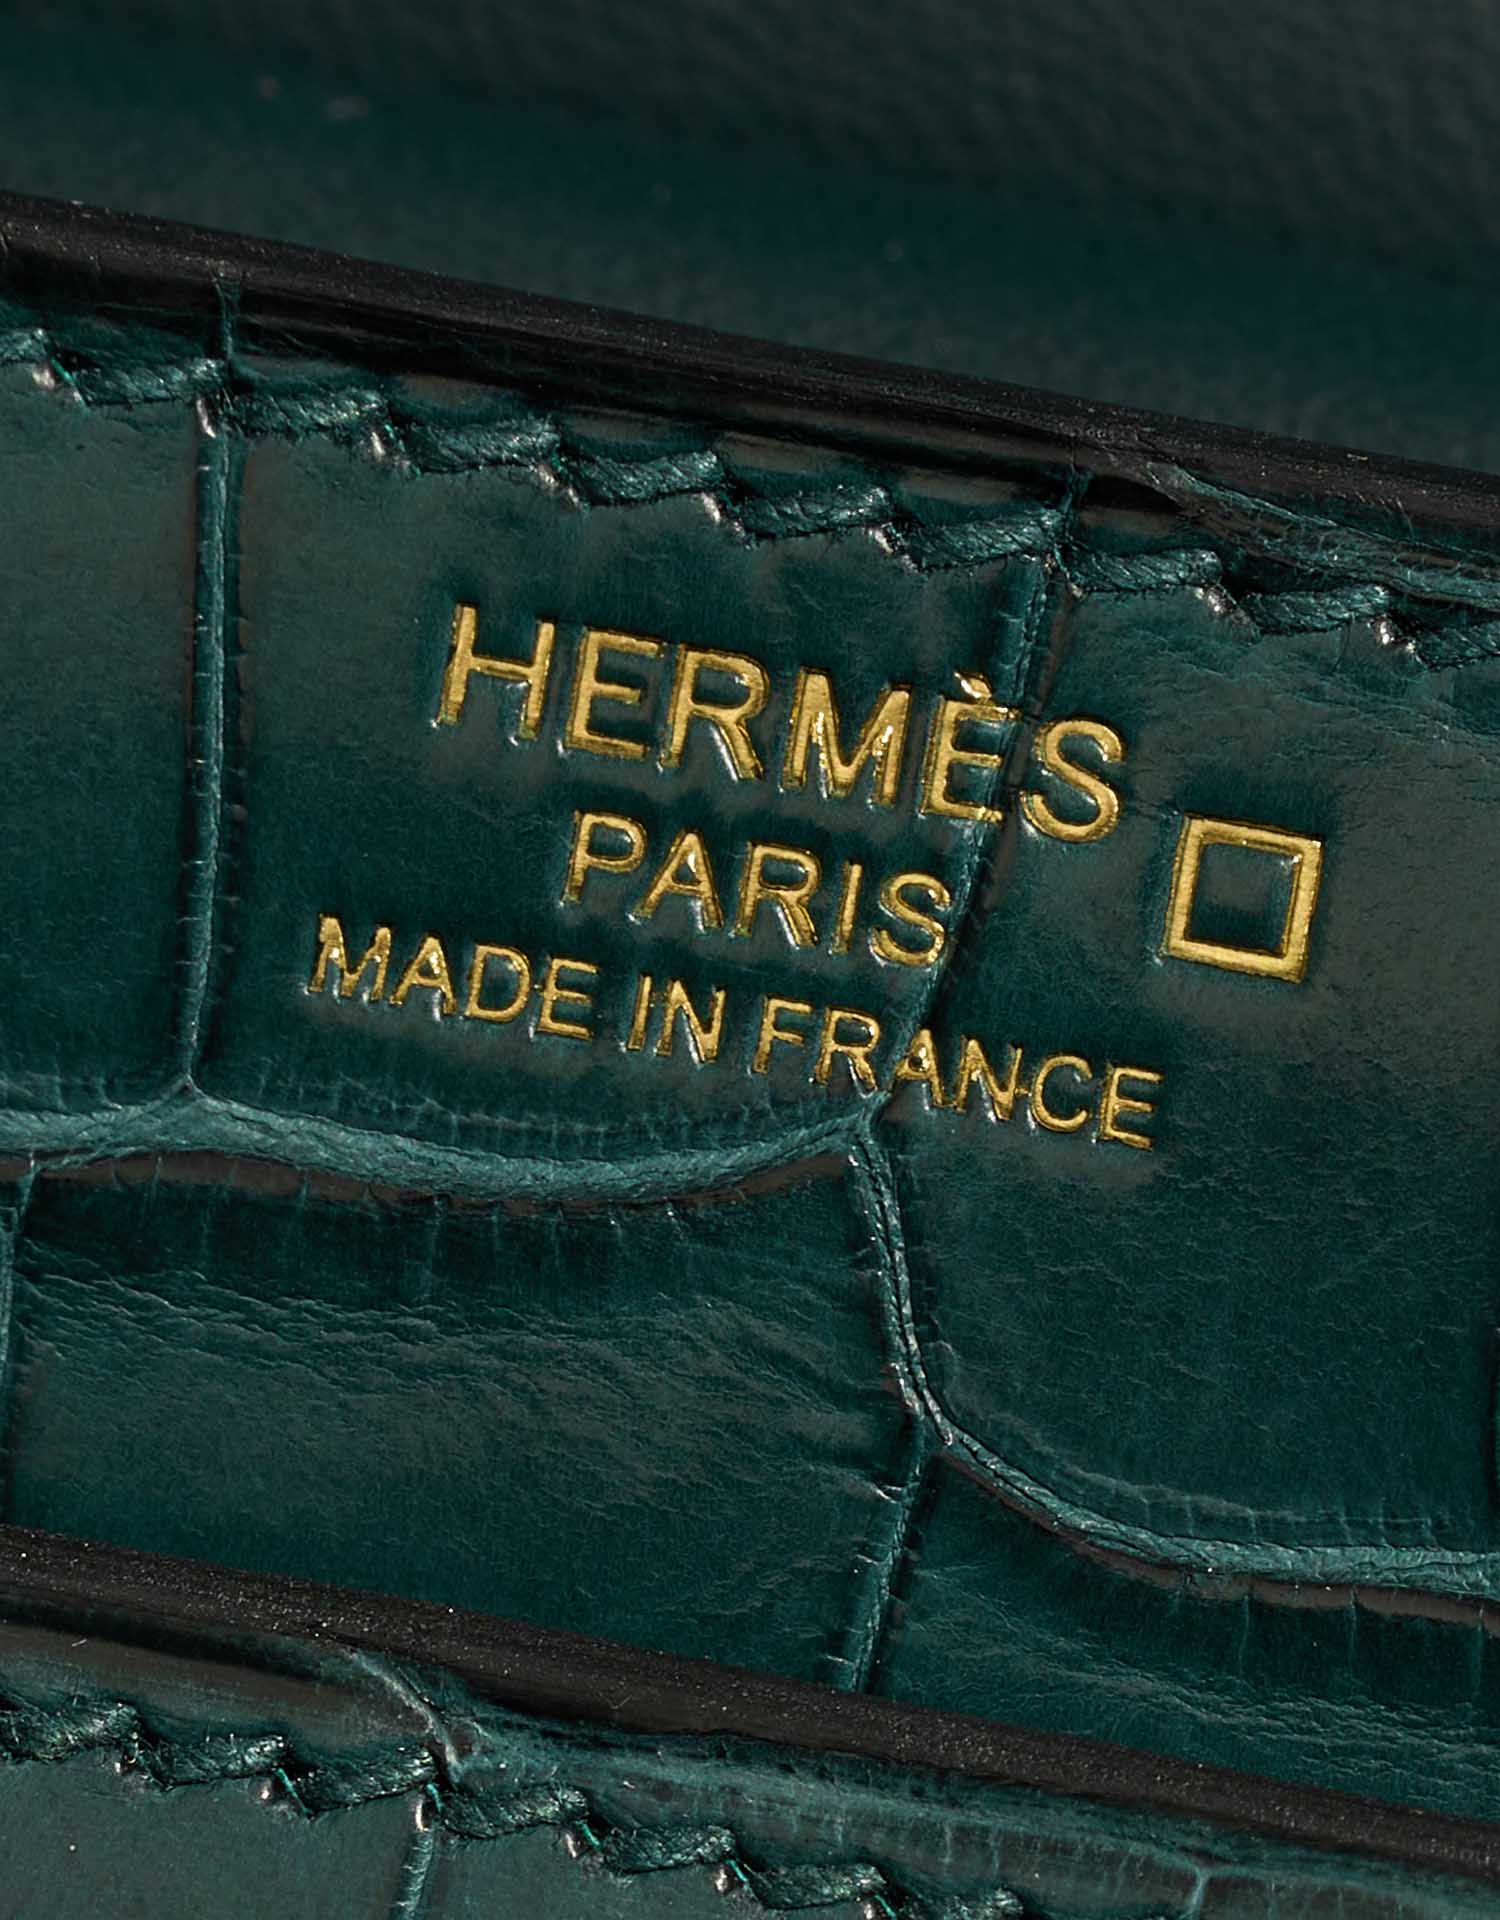 Pre-owned Hermès bag Verrou 23 Matte Alligator Malachite Green | Sell your designer bag on Saclab.com